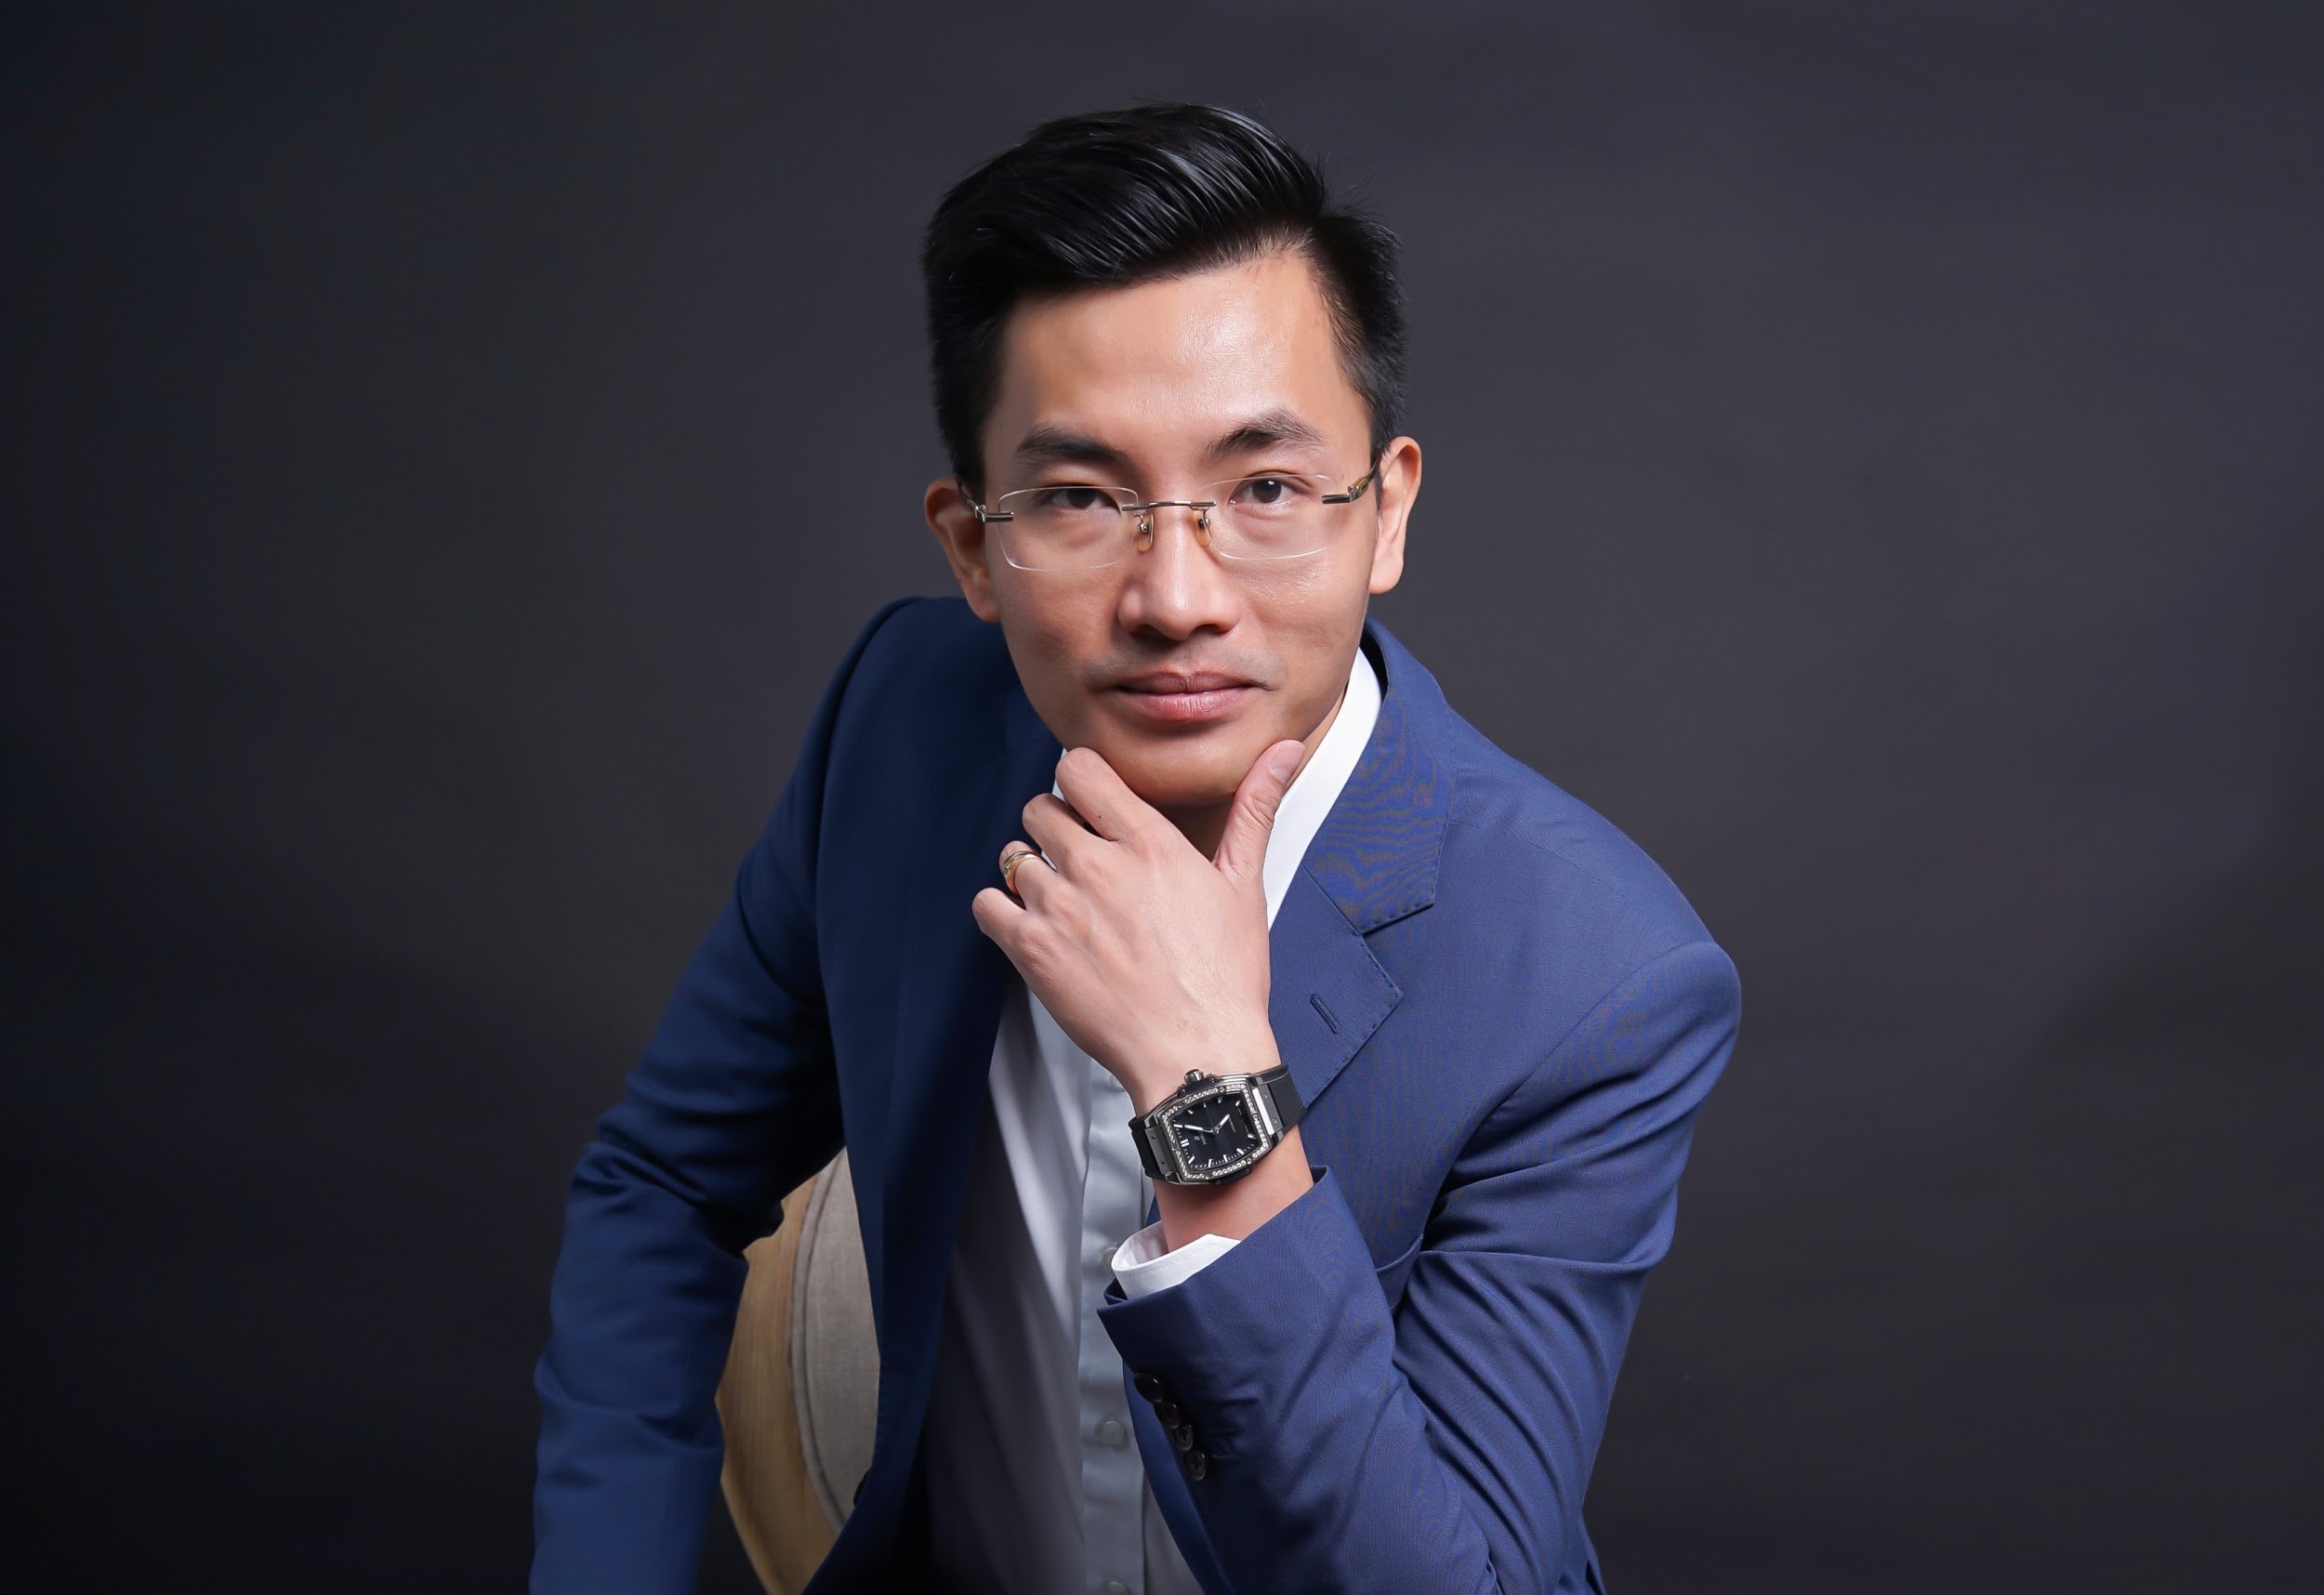 CEO Thái Hoàng Sơn: “Thẩm mỹ tạo vẻ đẹp tuyệt tác trong từng centimet” - ảnh 1